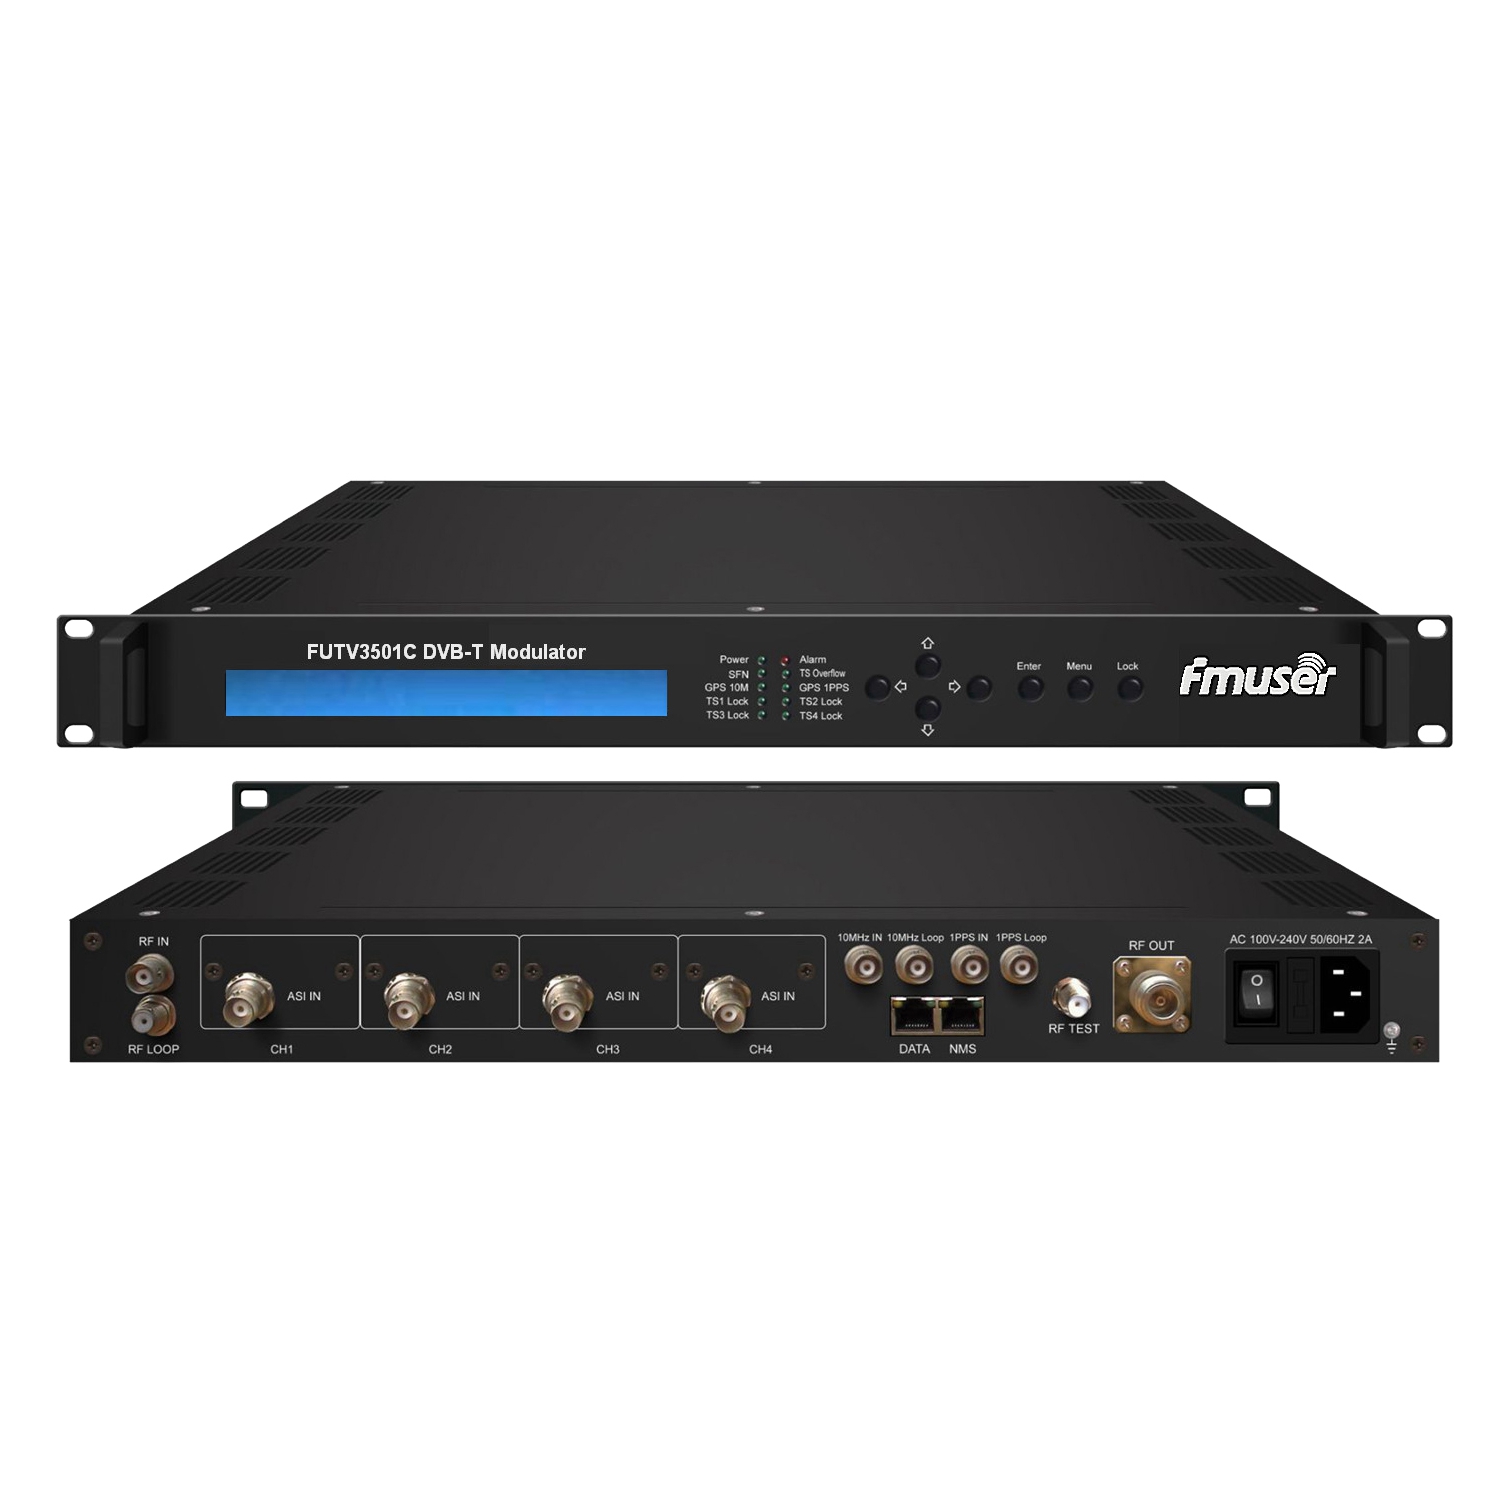 FMUSER FUTV3501C DVB-T модулятор (4 * ASI в, 1 * RF DPD поза, DVB-T стандарт) з дистанційним управлінням